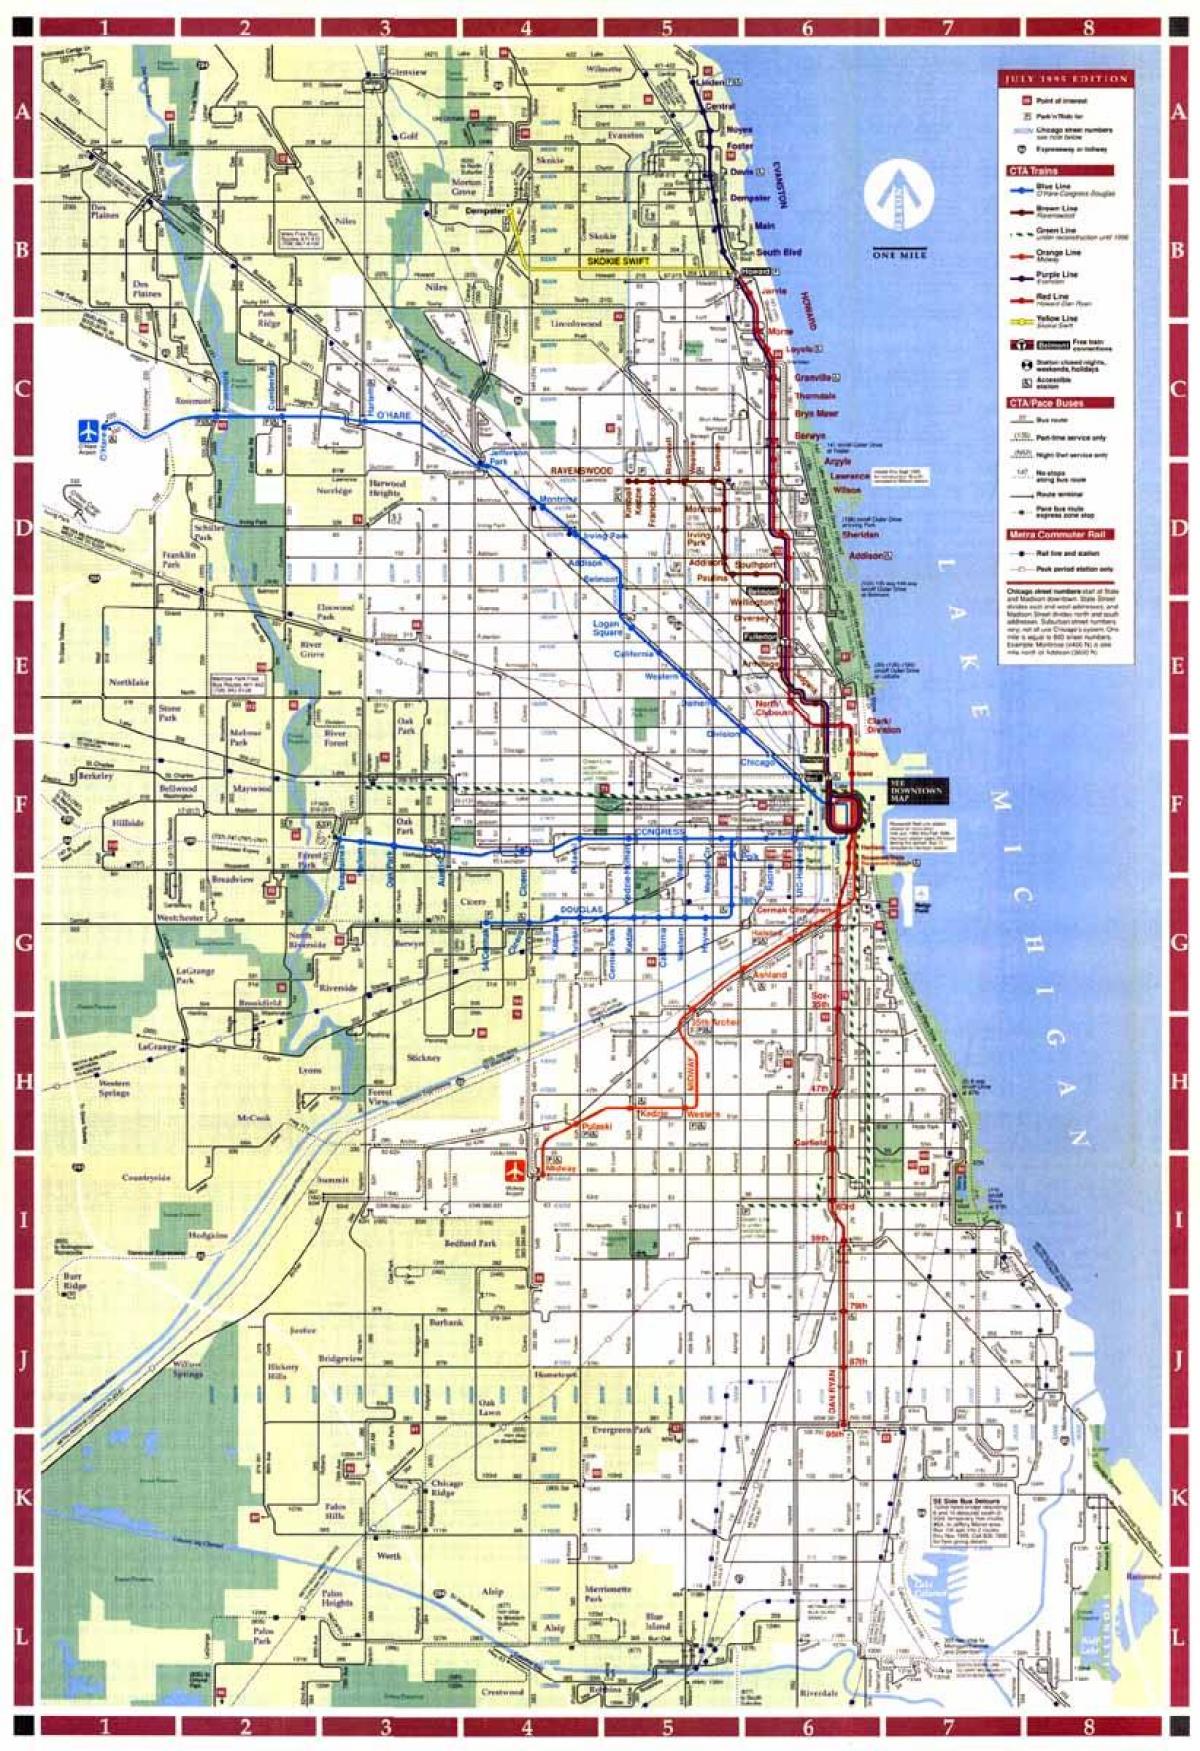 Çikaqo şəhərinin xəritəsi